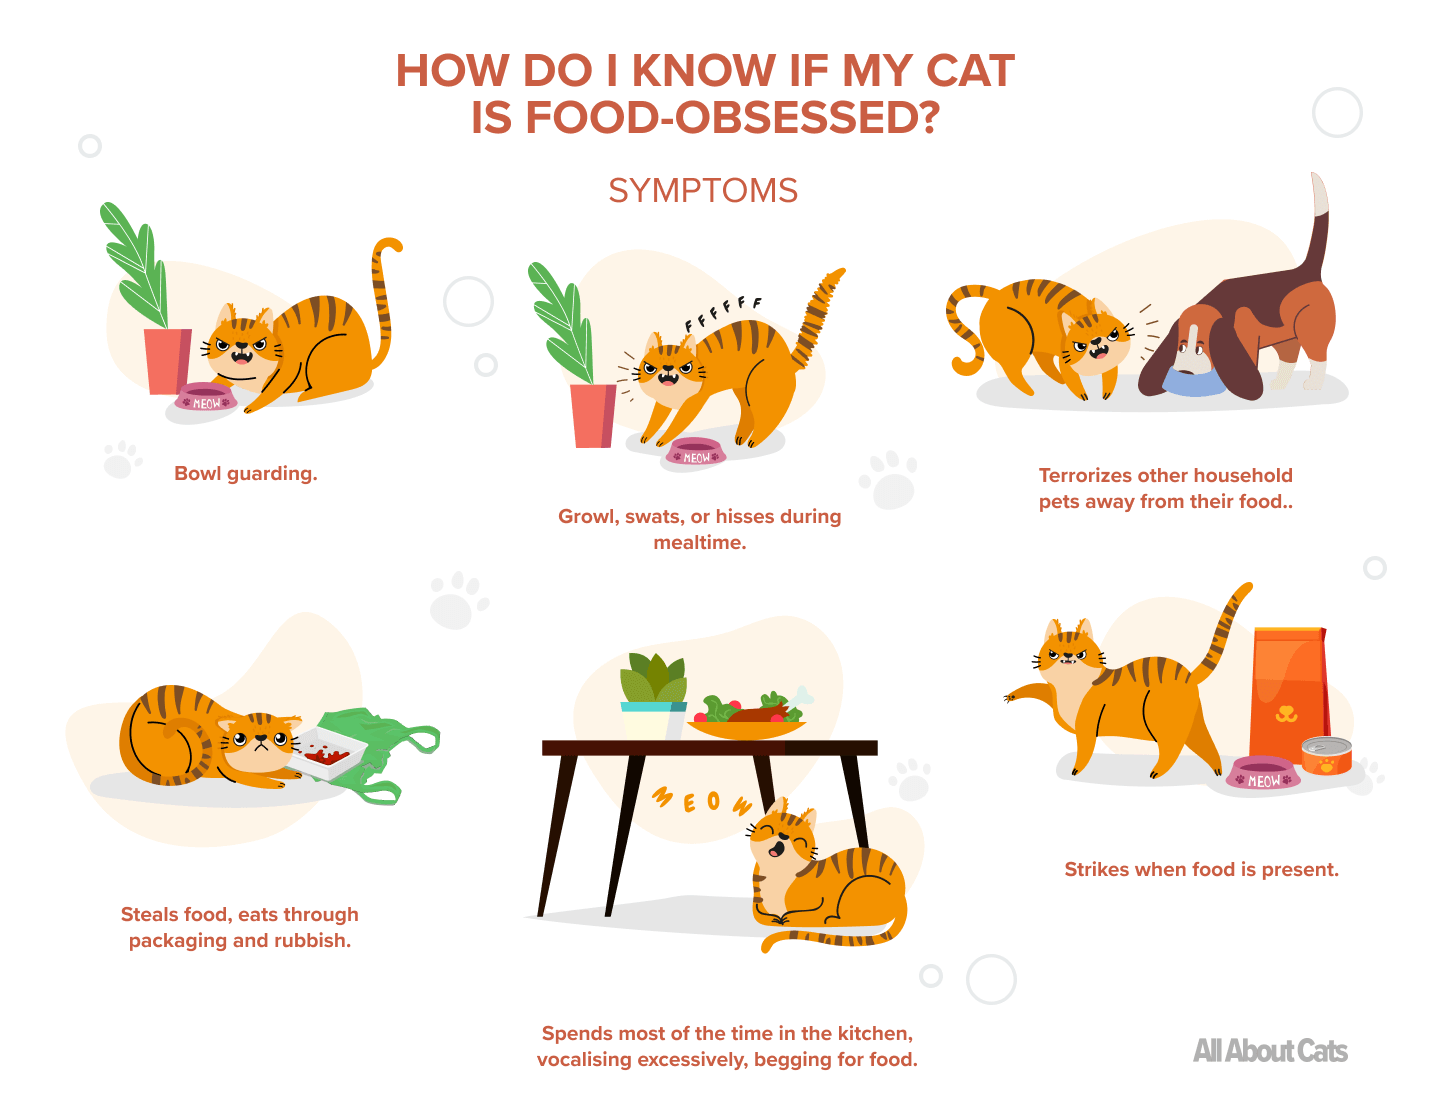 고양이의 음식 공격성:알아야 할 사항은 무엇입니까?